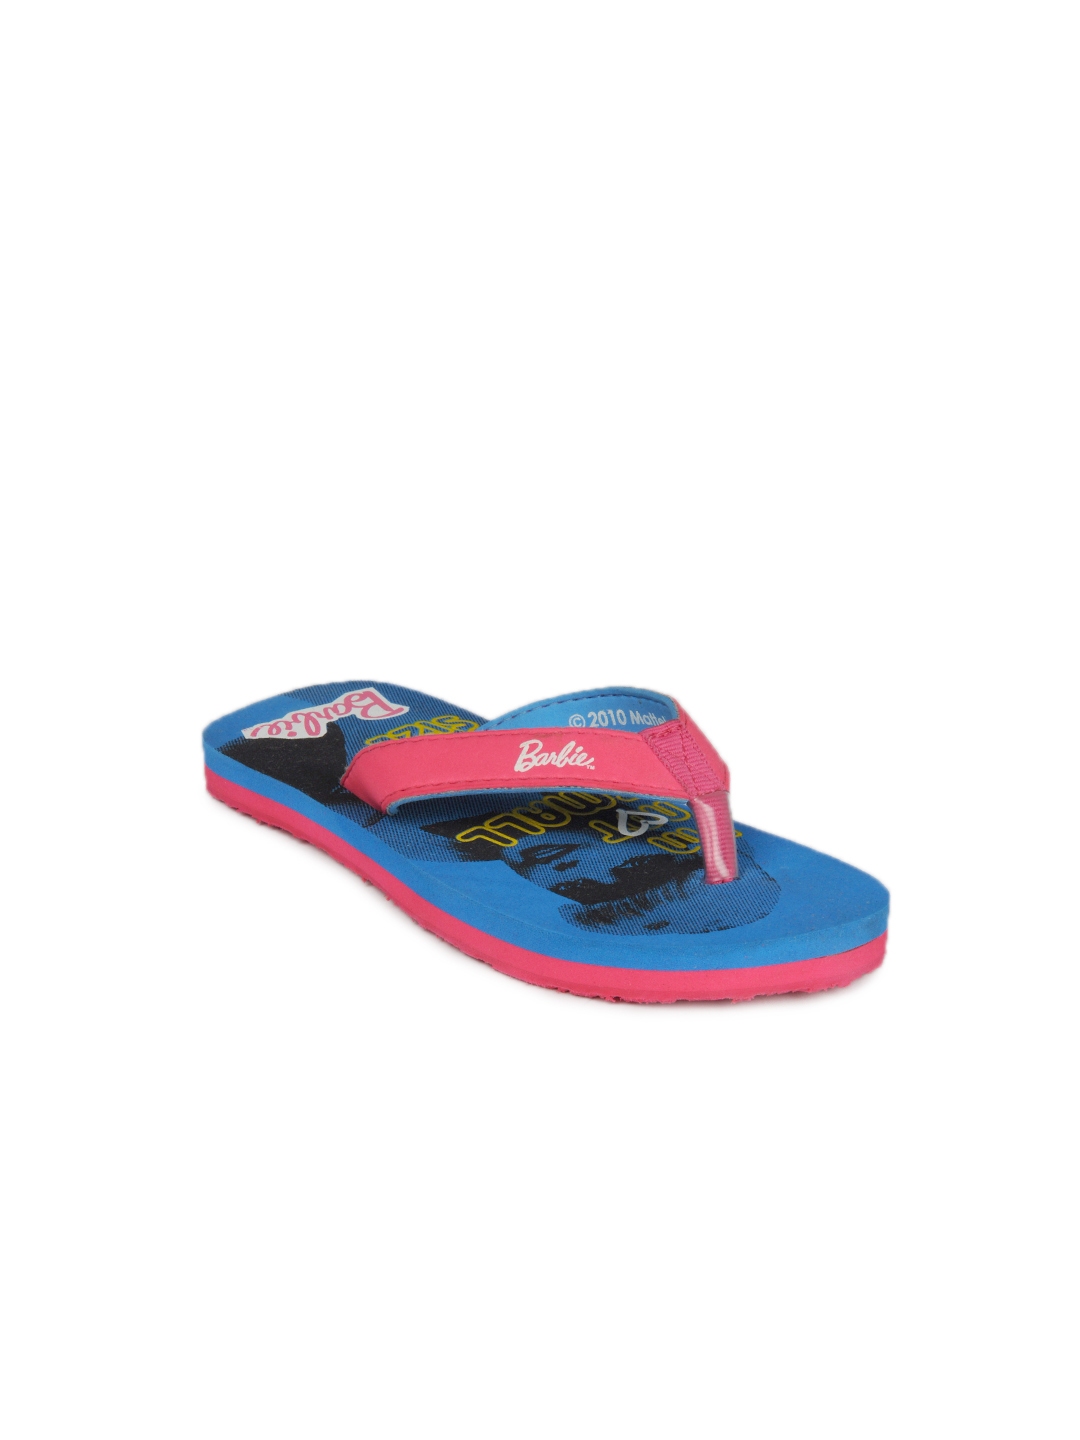 Buy Barbie Girls Blue Slippers - Flip Flops for Girls 46844 | Myntra